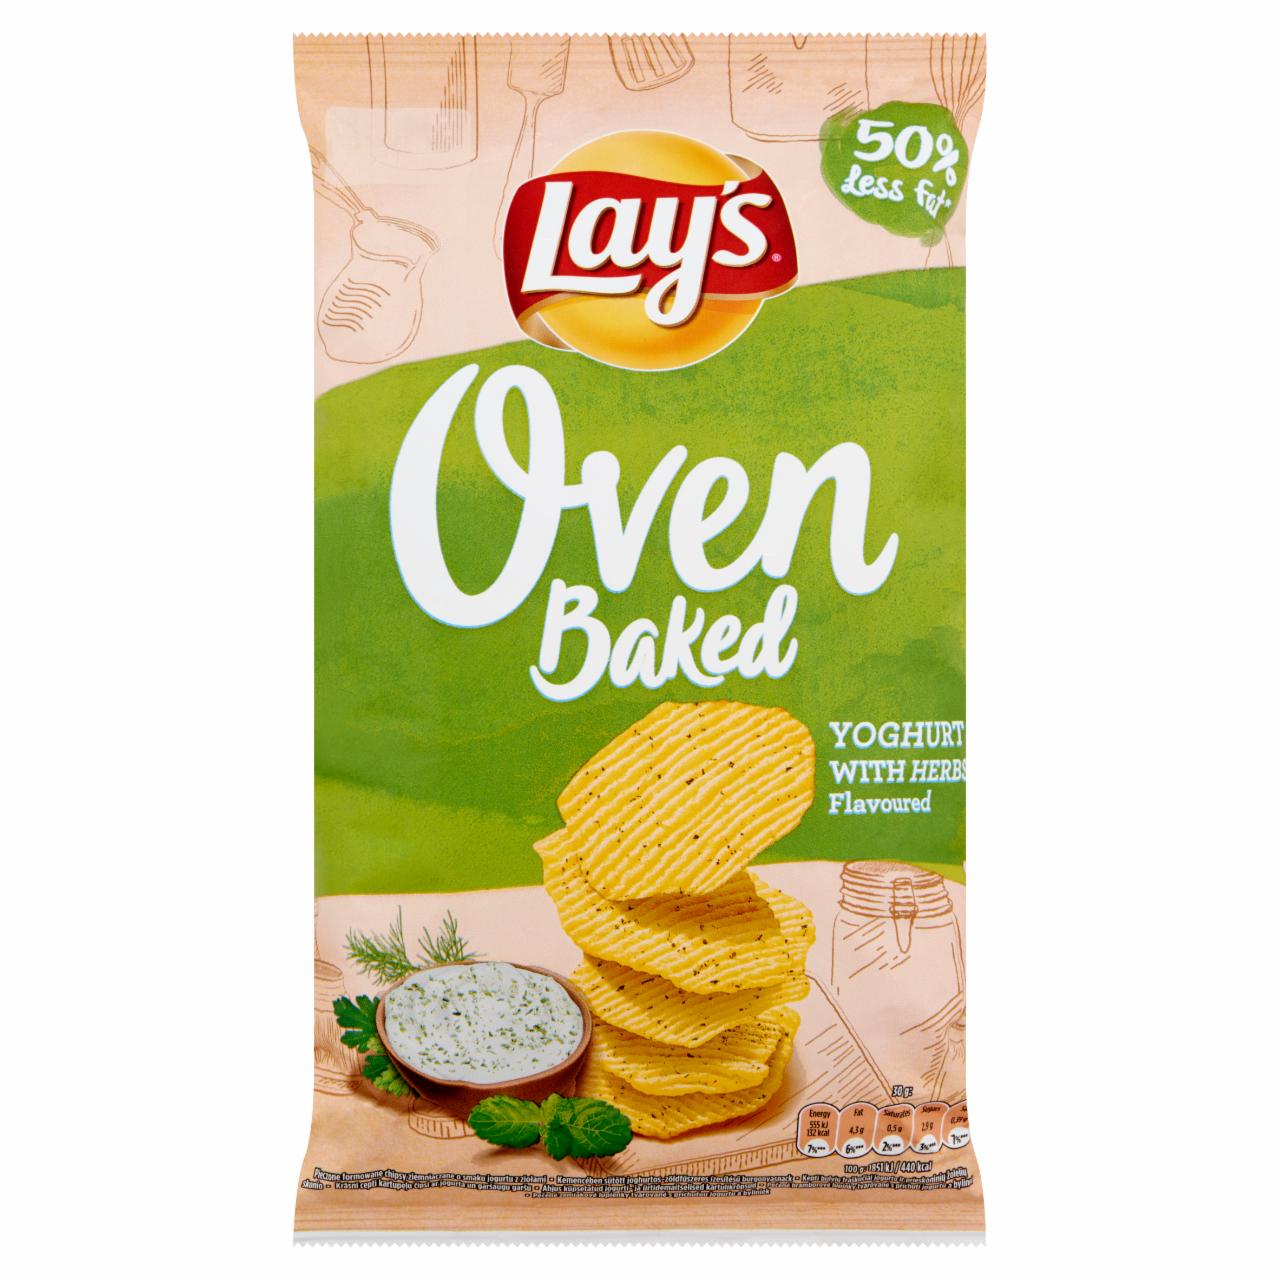 Zdjęcia - Oven Baked Pieczone formowane chipsy ziemniaczane o smaku śmietankowego serka z pieprzem Lay's